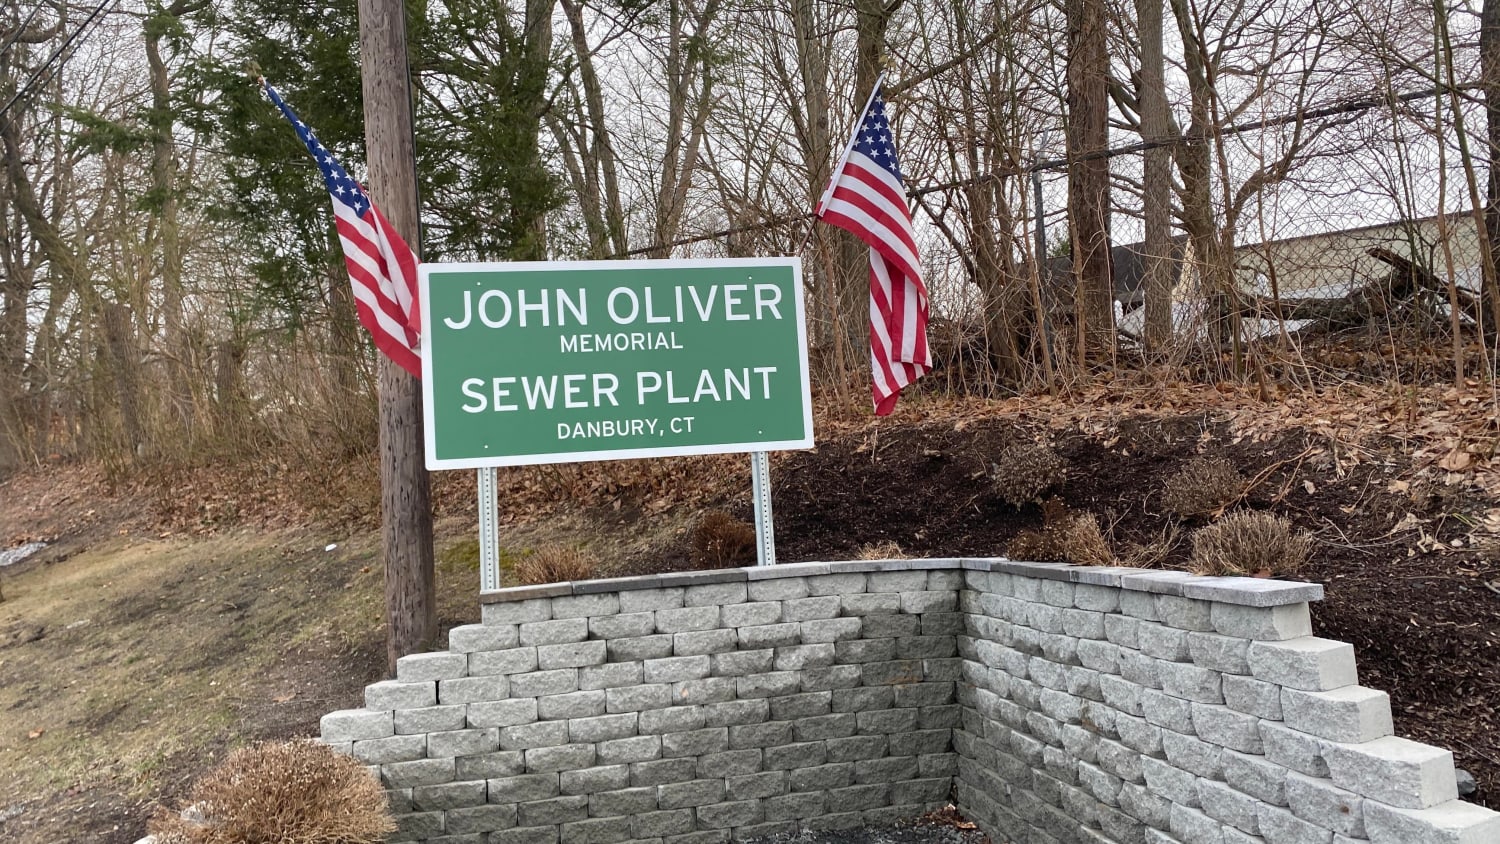 I visited the John Oliver Memorial Sewage Plant